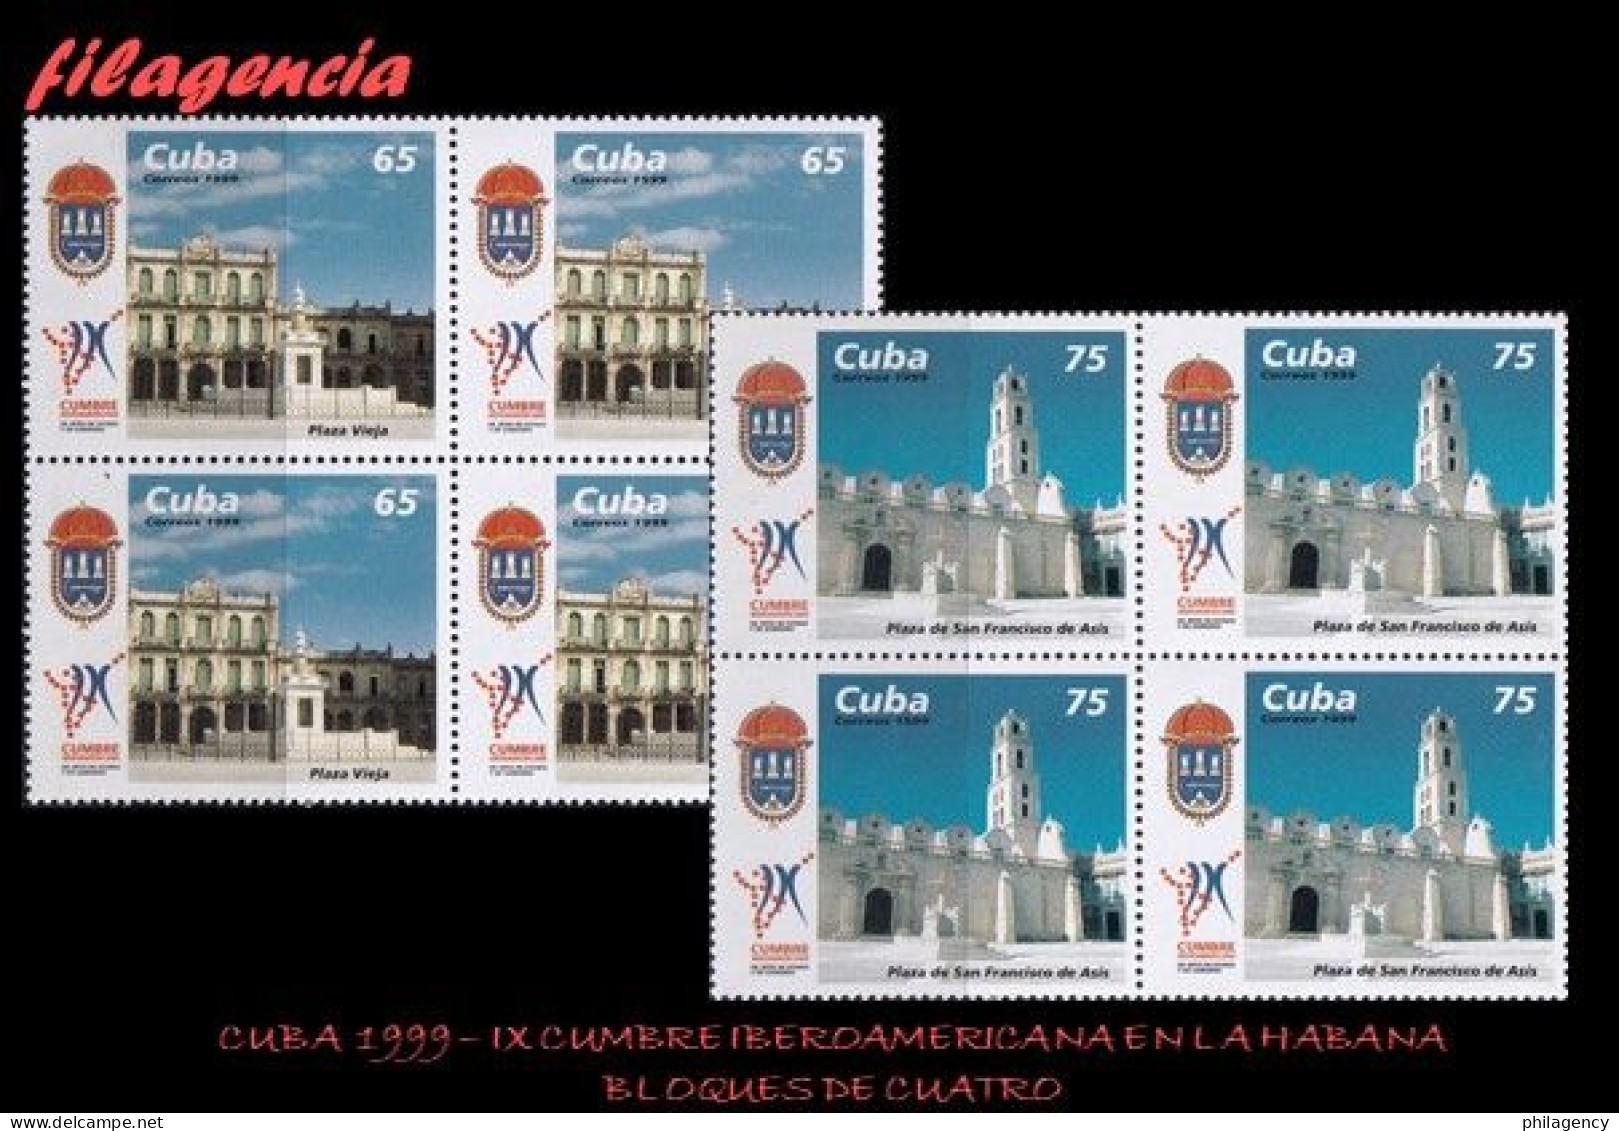 CUBA. BLOQUES DE CUATRO. 1999-27 IX CUMBRE IBEROAMERICANA DE JEFES DE ESTADO EN LA HABANA - Nuevos